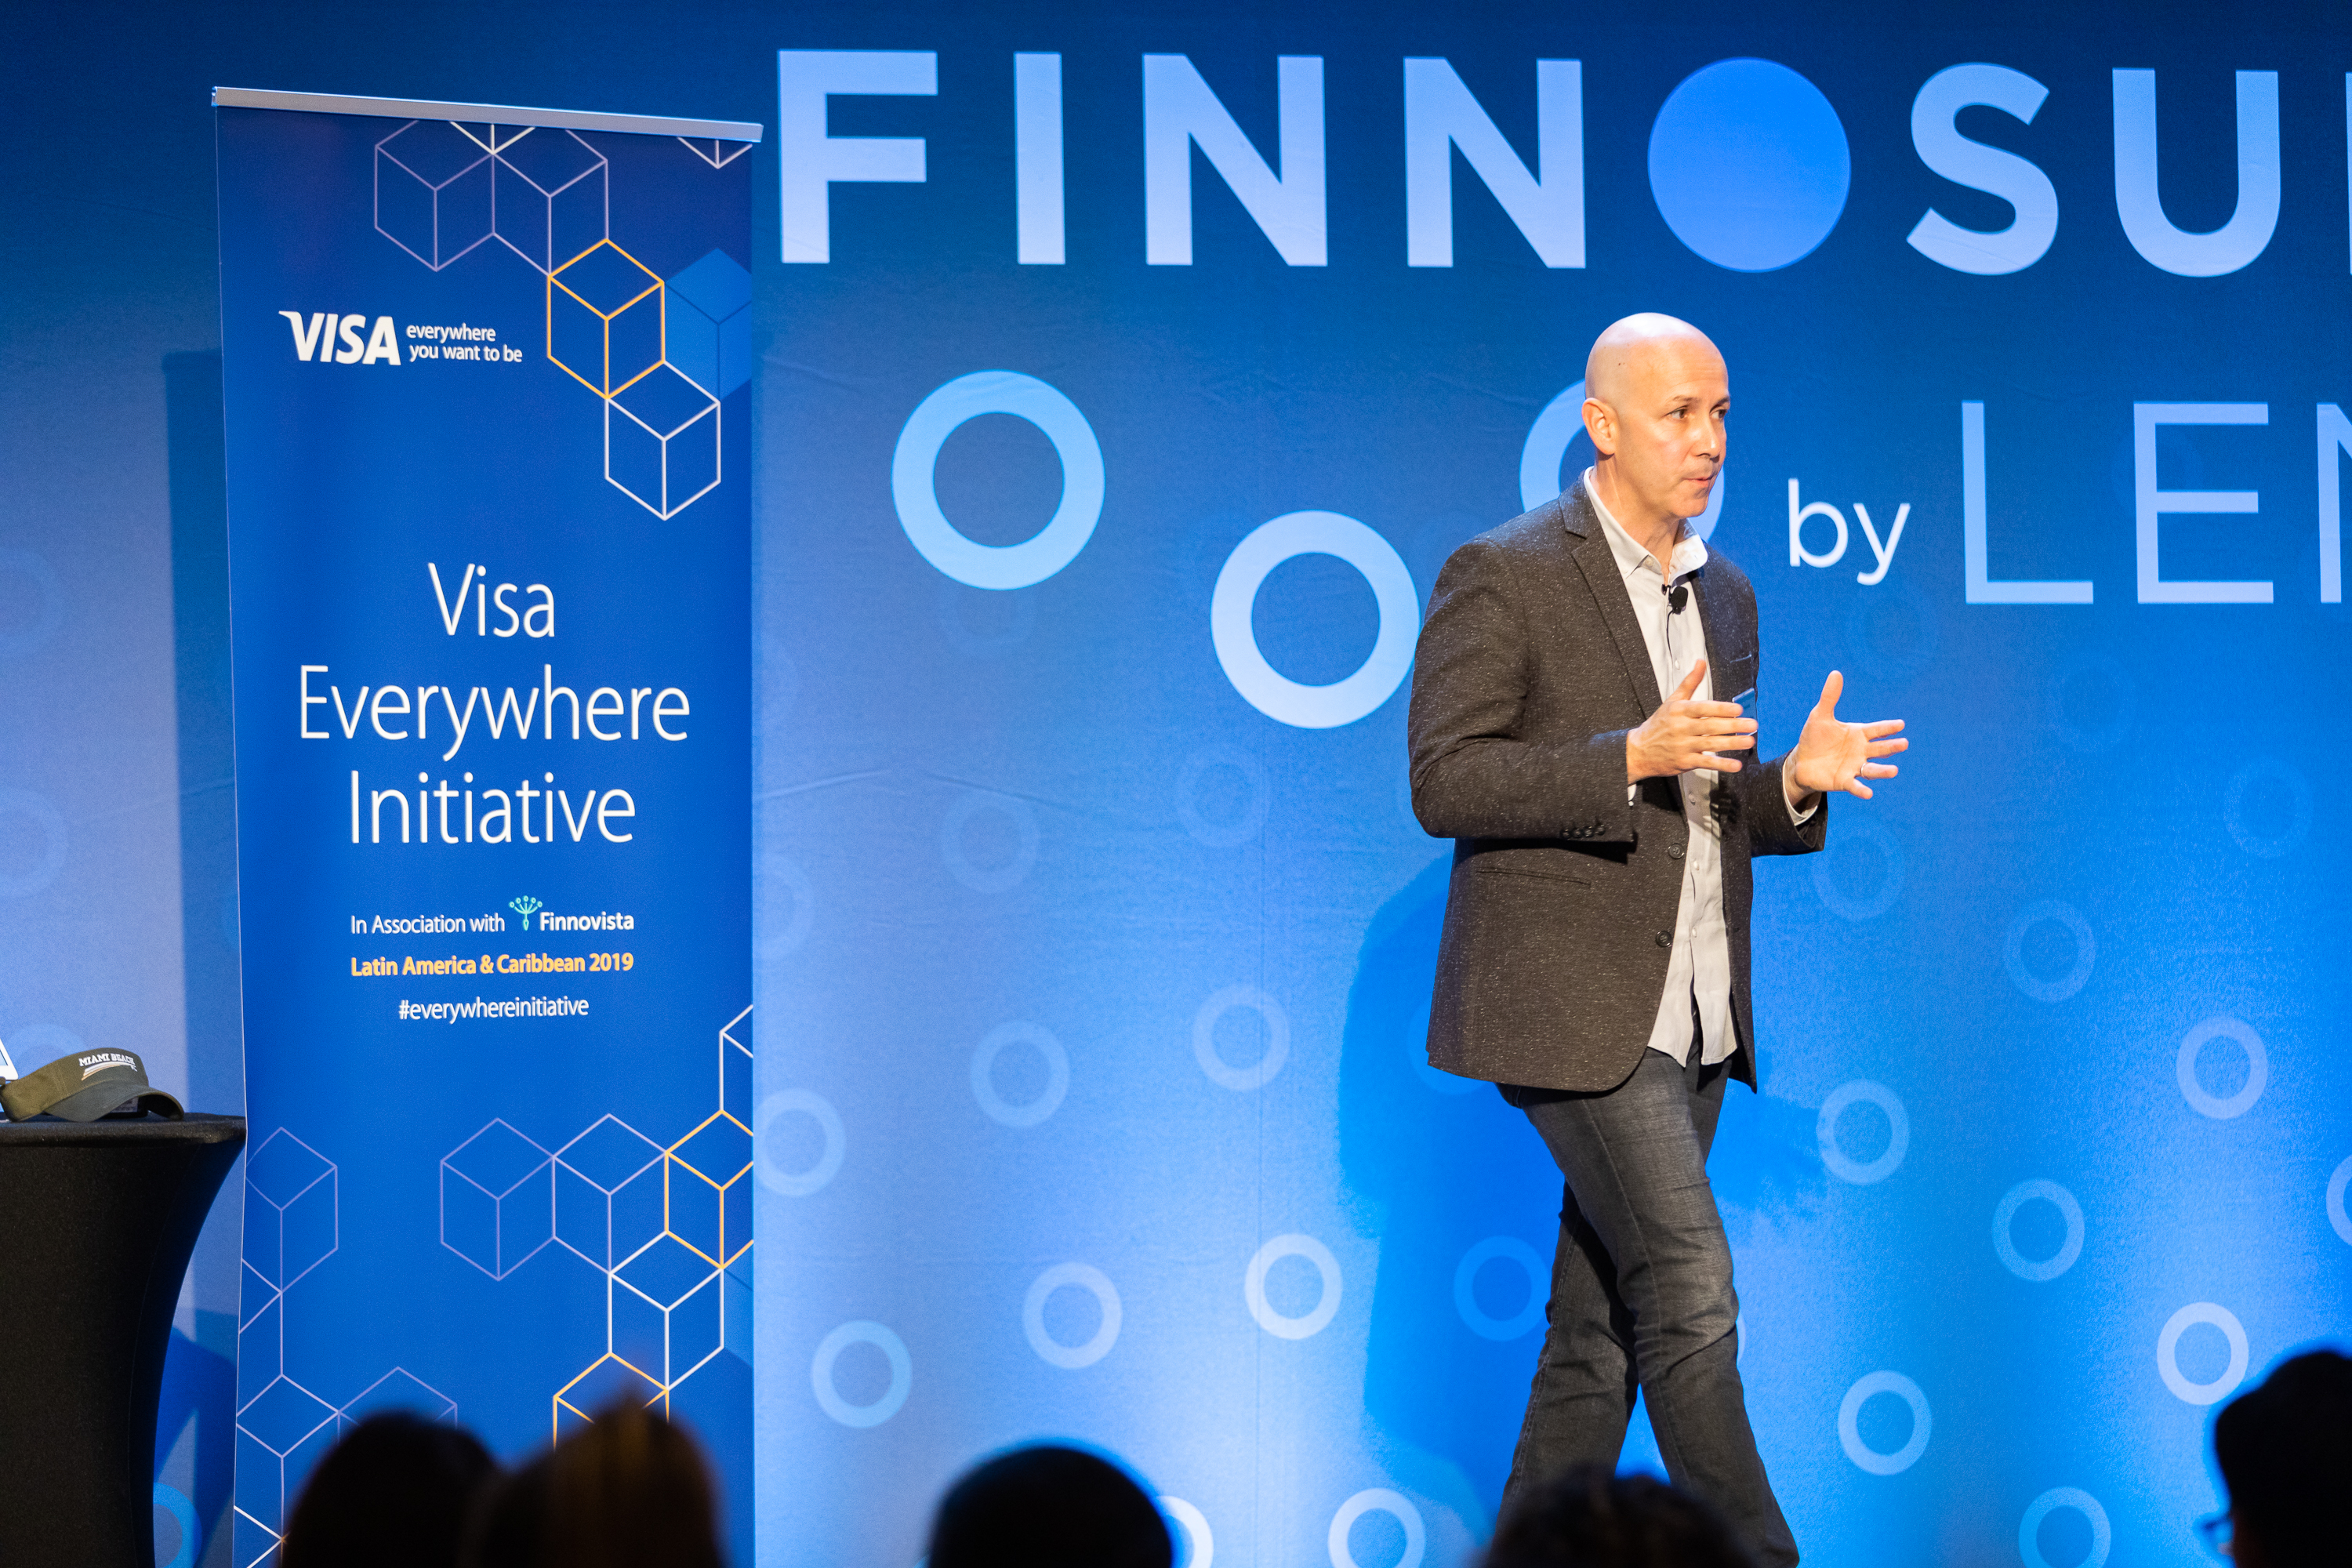 Andrés Fontao, Co-Founder & Managing Partner of Finnovista